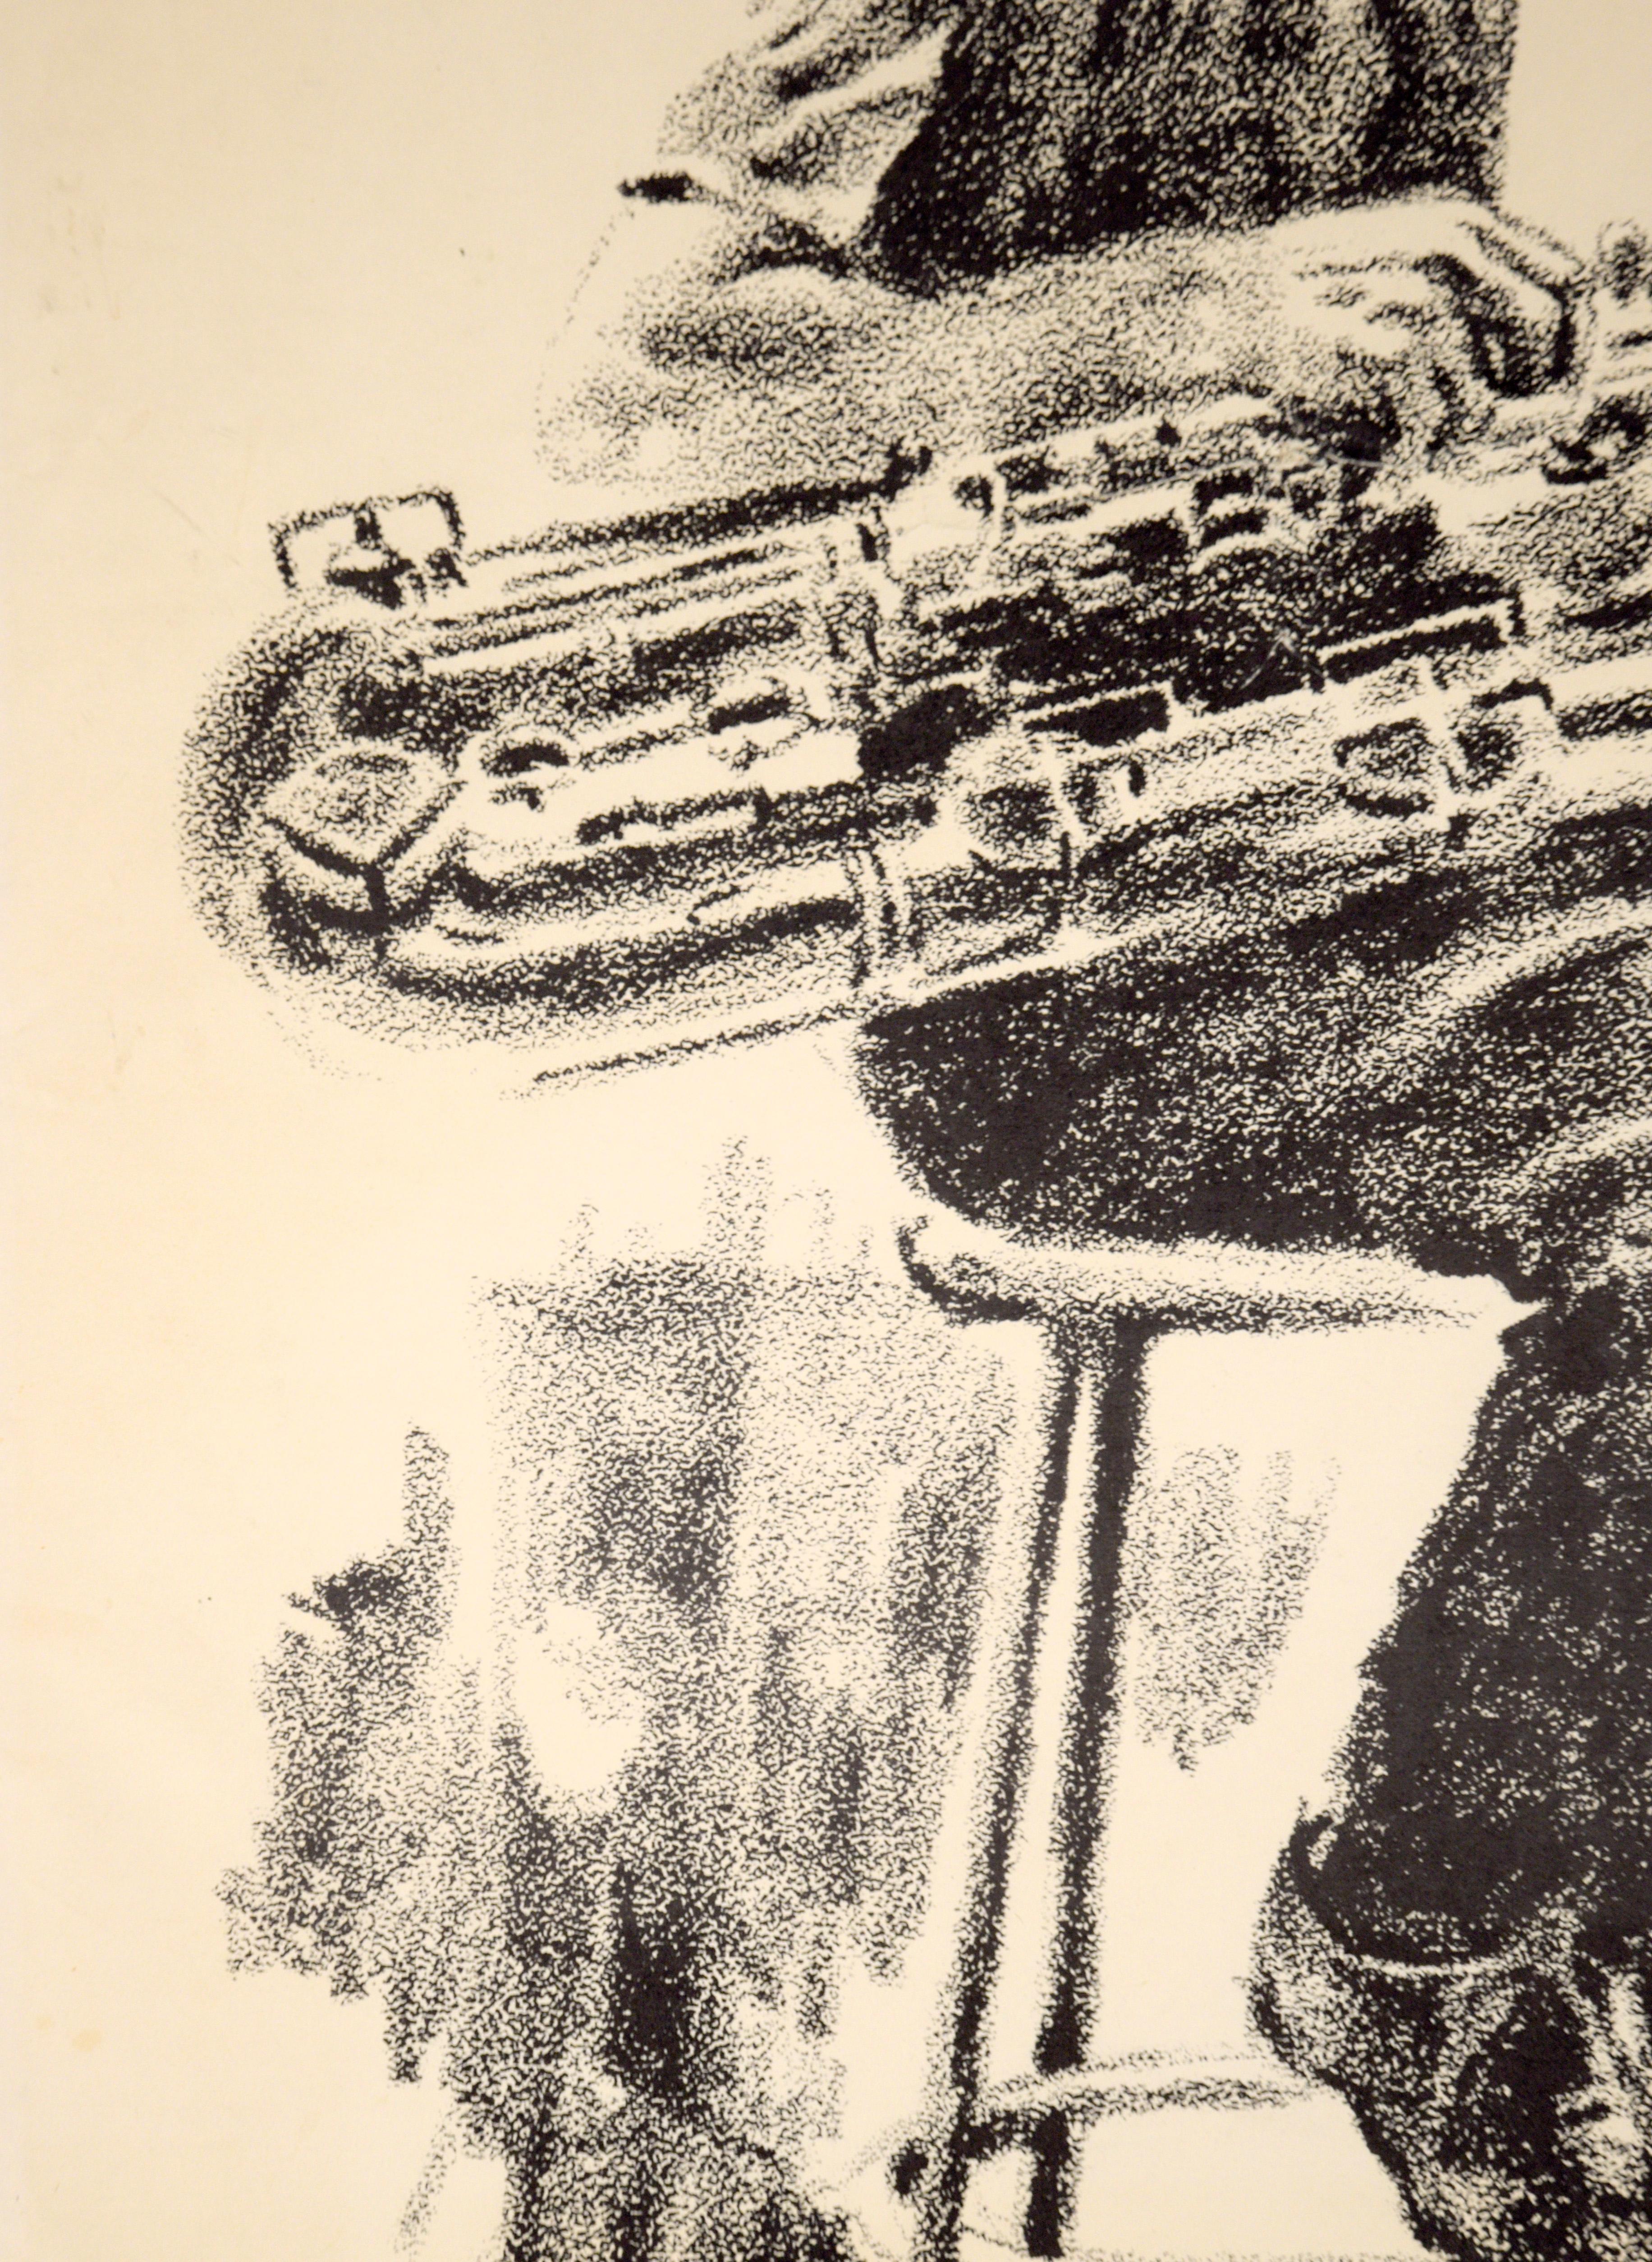 Gerry Mulligan, Baritone Sax – seltene signierte figurative Lithographie in Tinte auf Papier

Kräftige Lithografie von Eugene Hawkins (Amerikaner, geb. 1933). Gerry Mulligan sitzt auf einem Hocker und hält sein Baritonsaxophon auf dem Schoß. 
In der